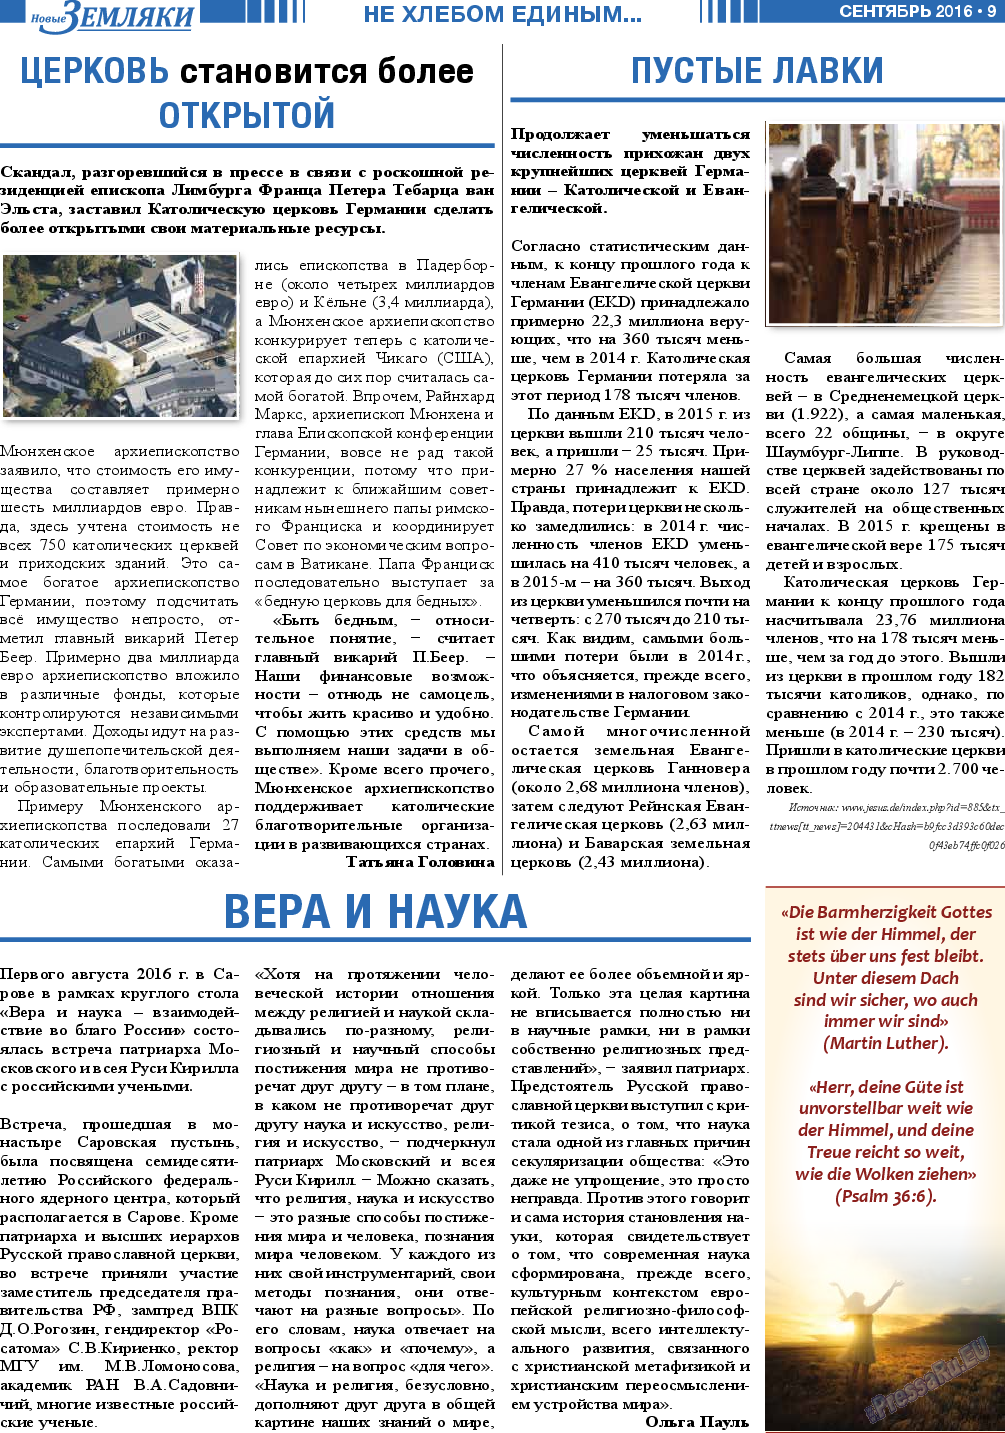 Новые Земляки (газета). 2016 год, номер 9, стр. 9